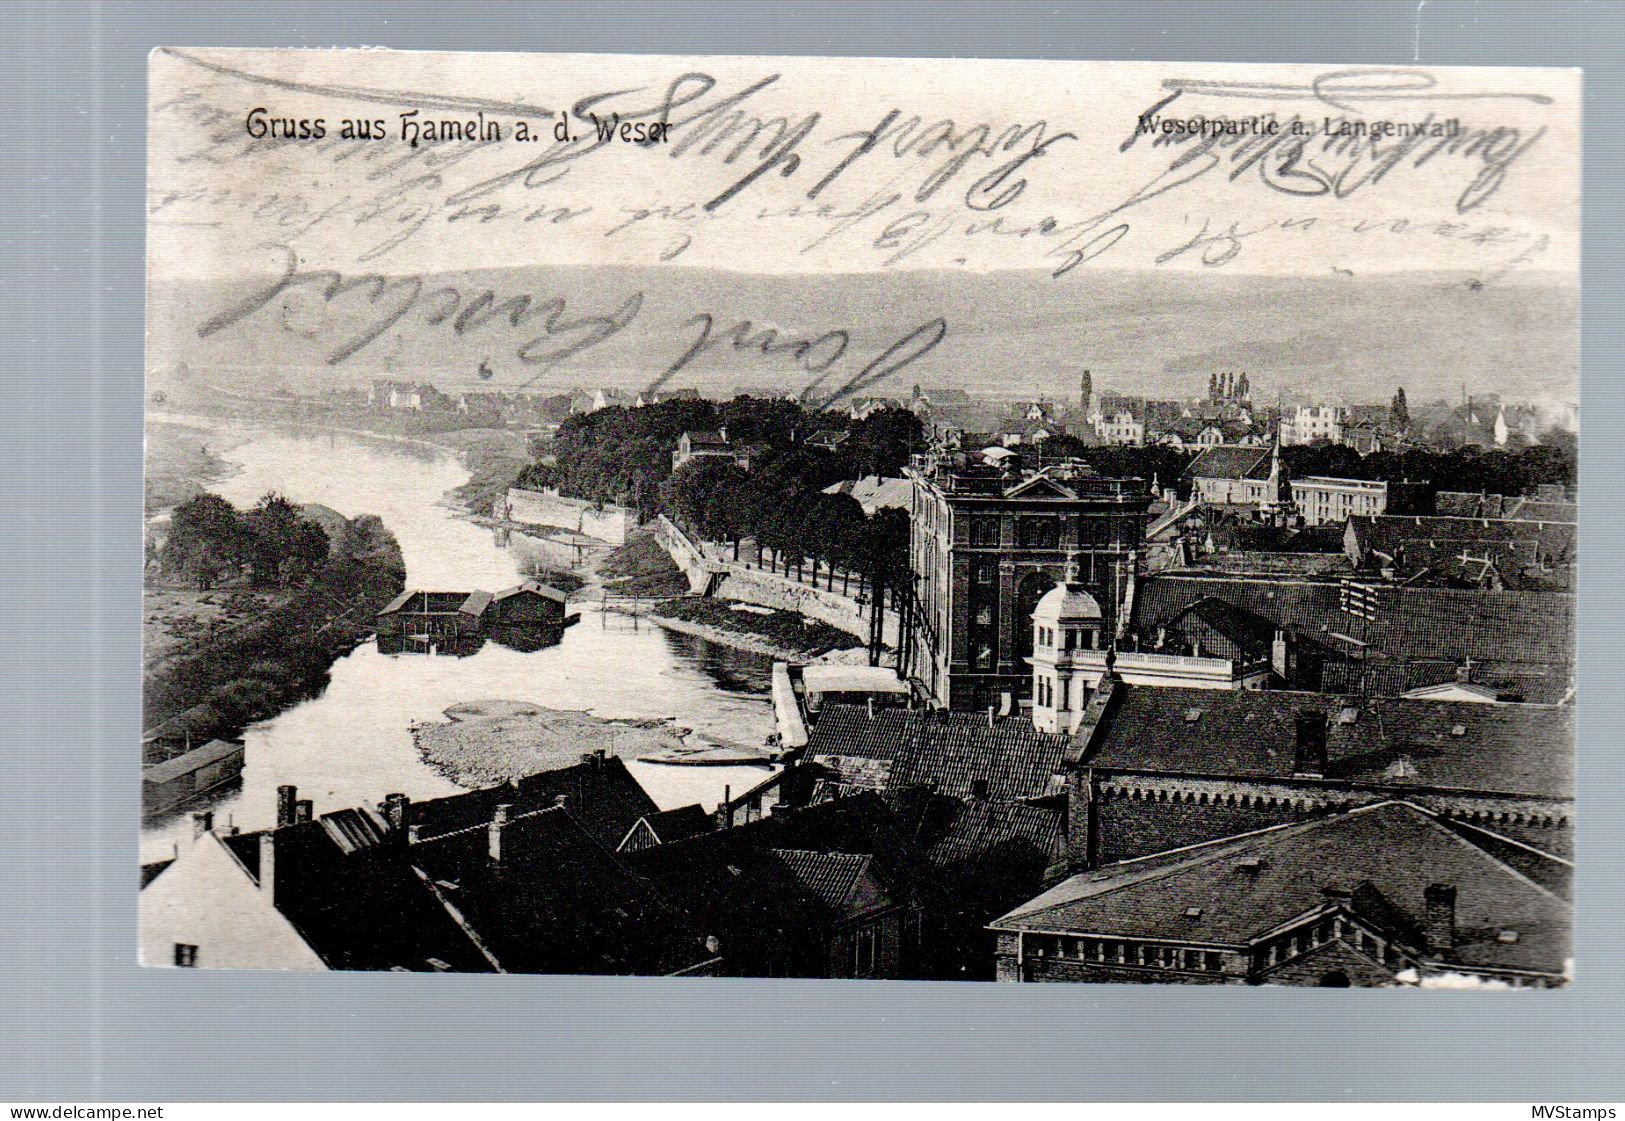 DR 1909 Postkarte Germania Luxus Gebraucht Bahnpost "Halle (s)-Lohne" - Briefe U. Dokumente